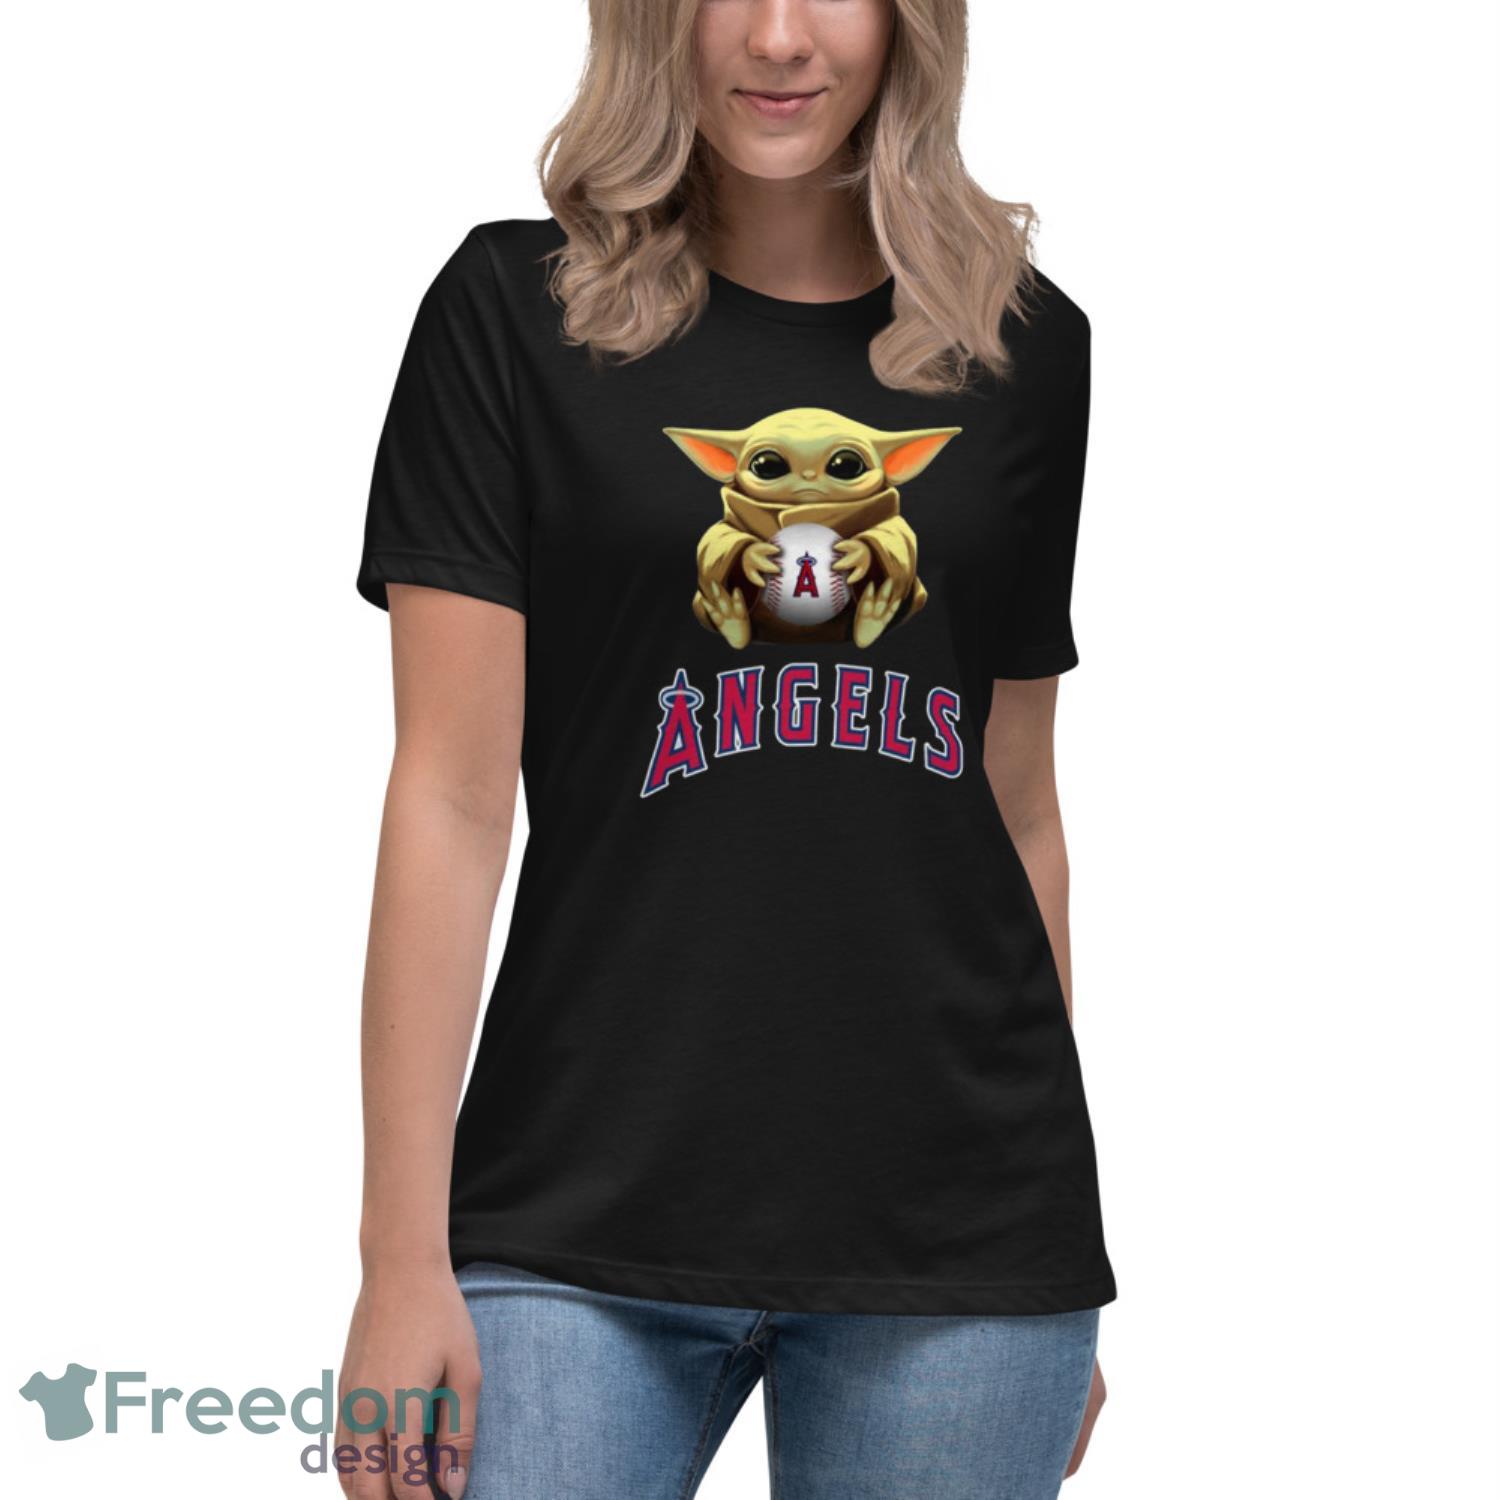 MLB Baseball Los Angeles Angels Star Wars Baby Yoda Shirt T Shirt -  Freedomdesign